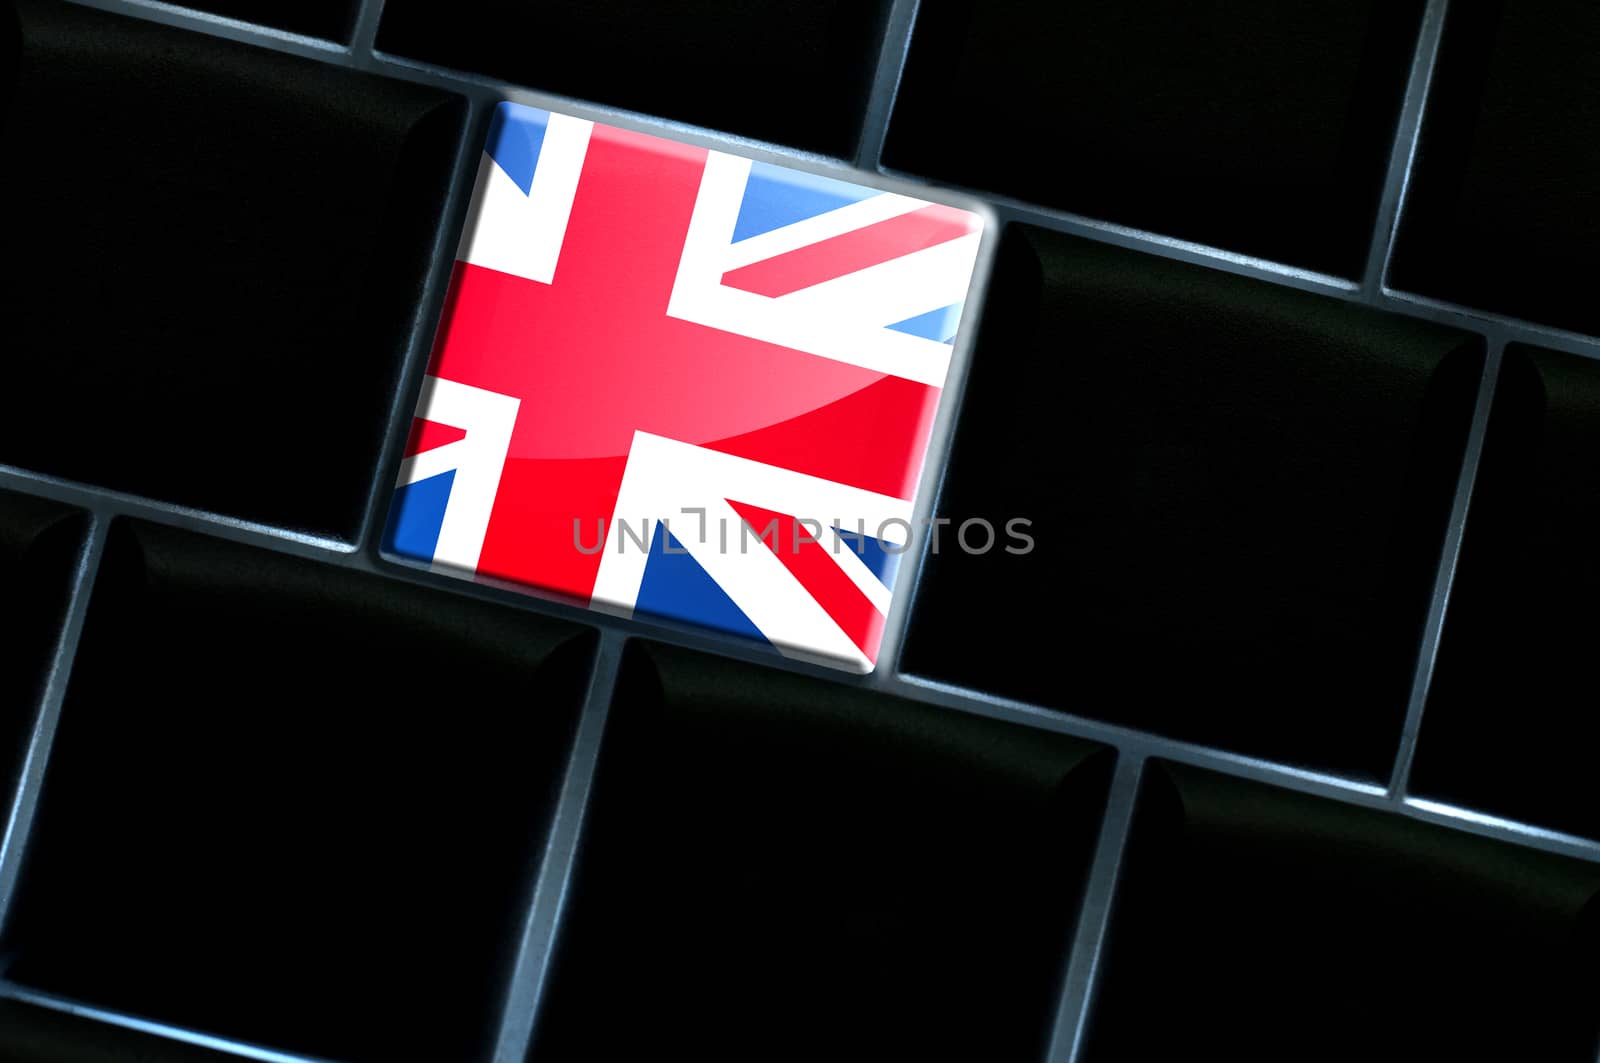 Online United Kingdom concept with backlit keyboard